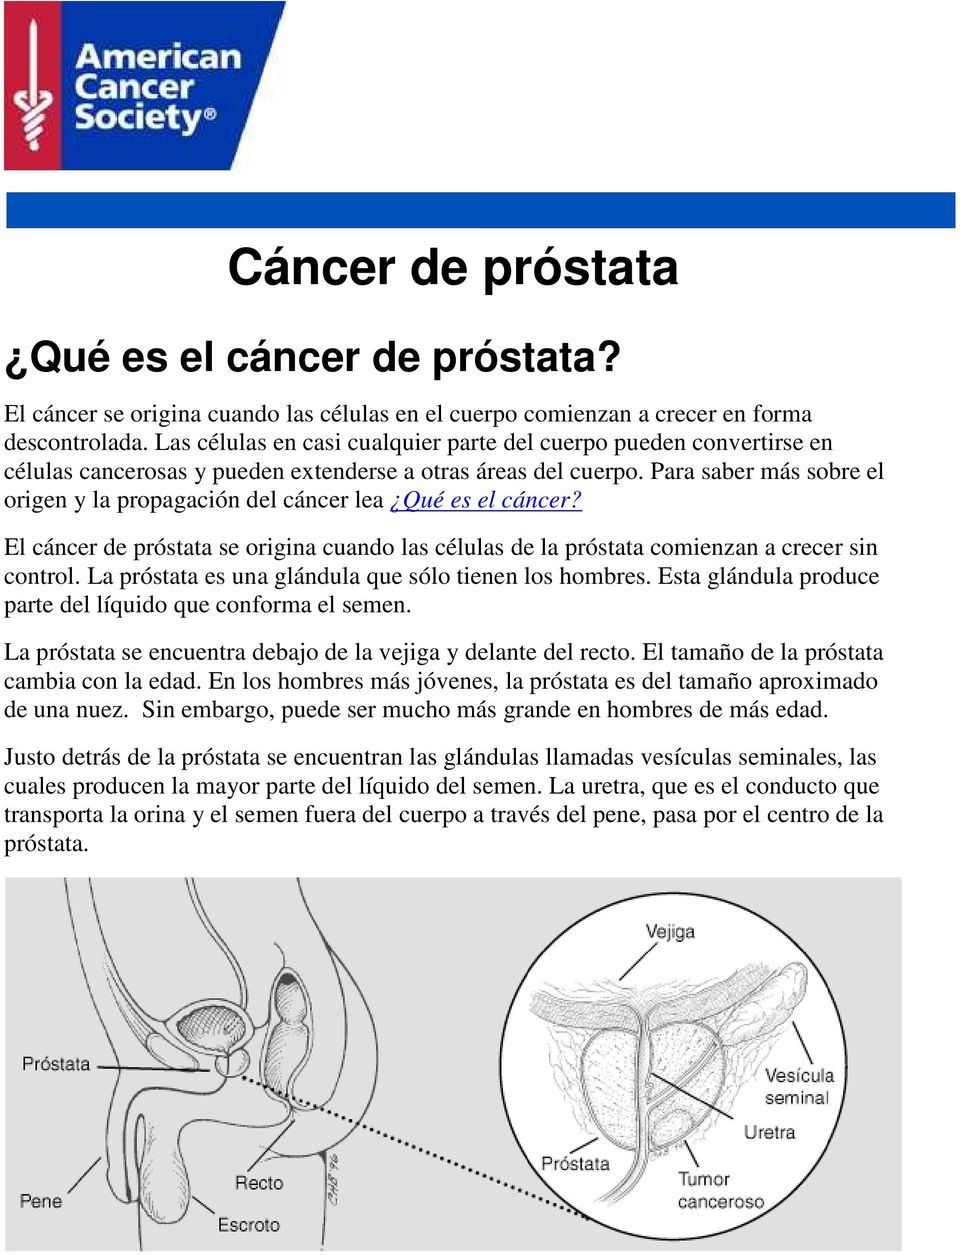 Para saber más sobre el origen y la propagación del cáncer lea Qué es el cáncer? El cáncer de próstata se origina cuando las células de la próstata comienzan a crecer sin control.